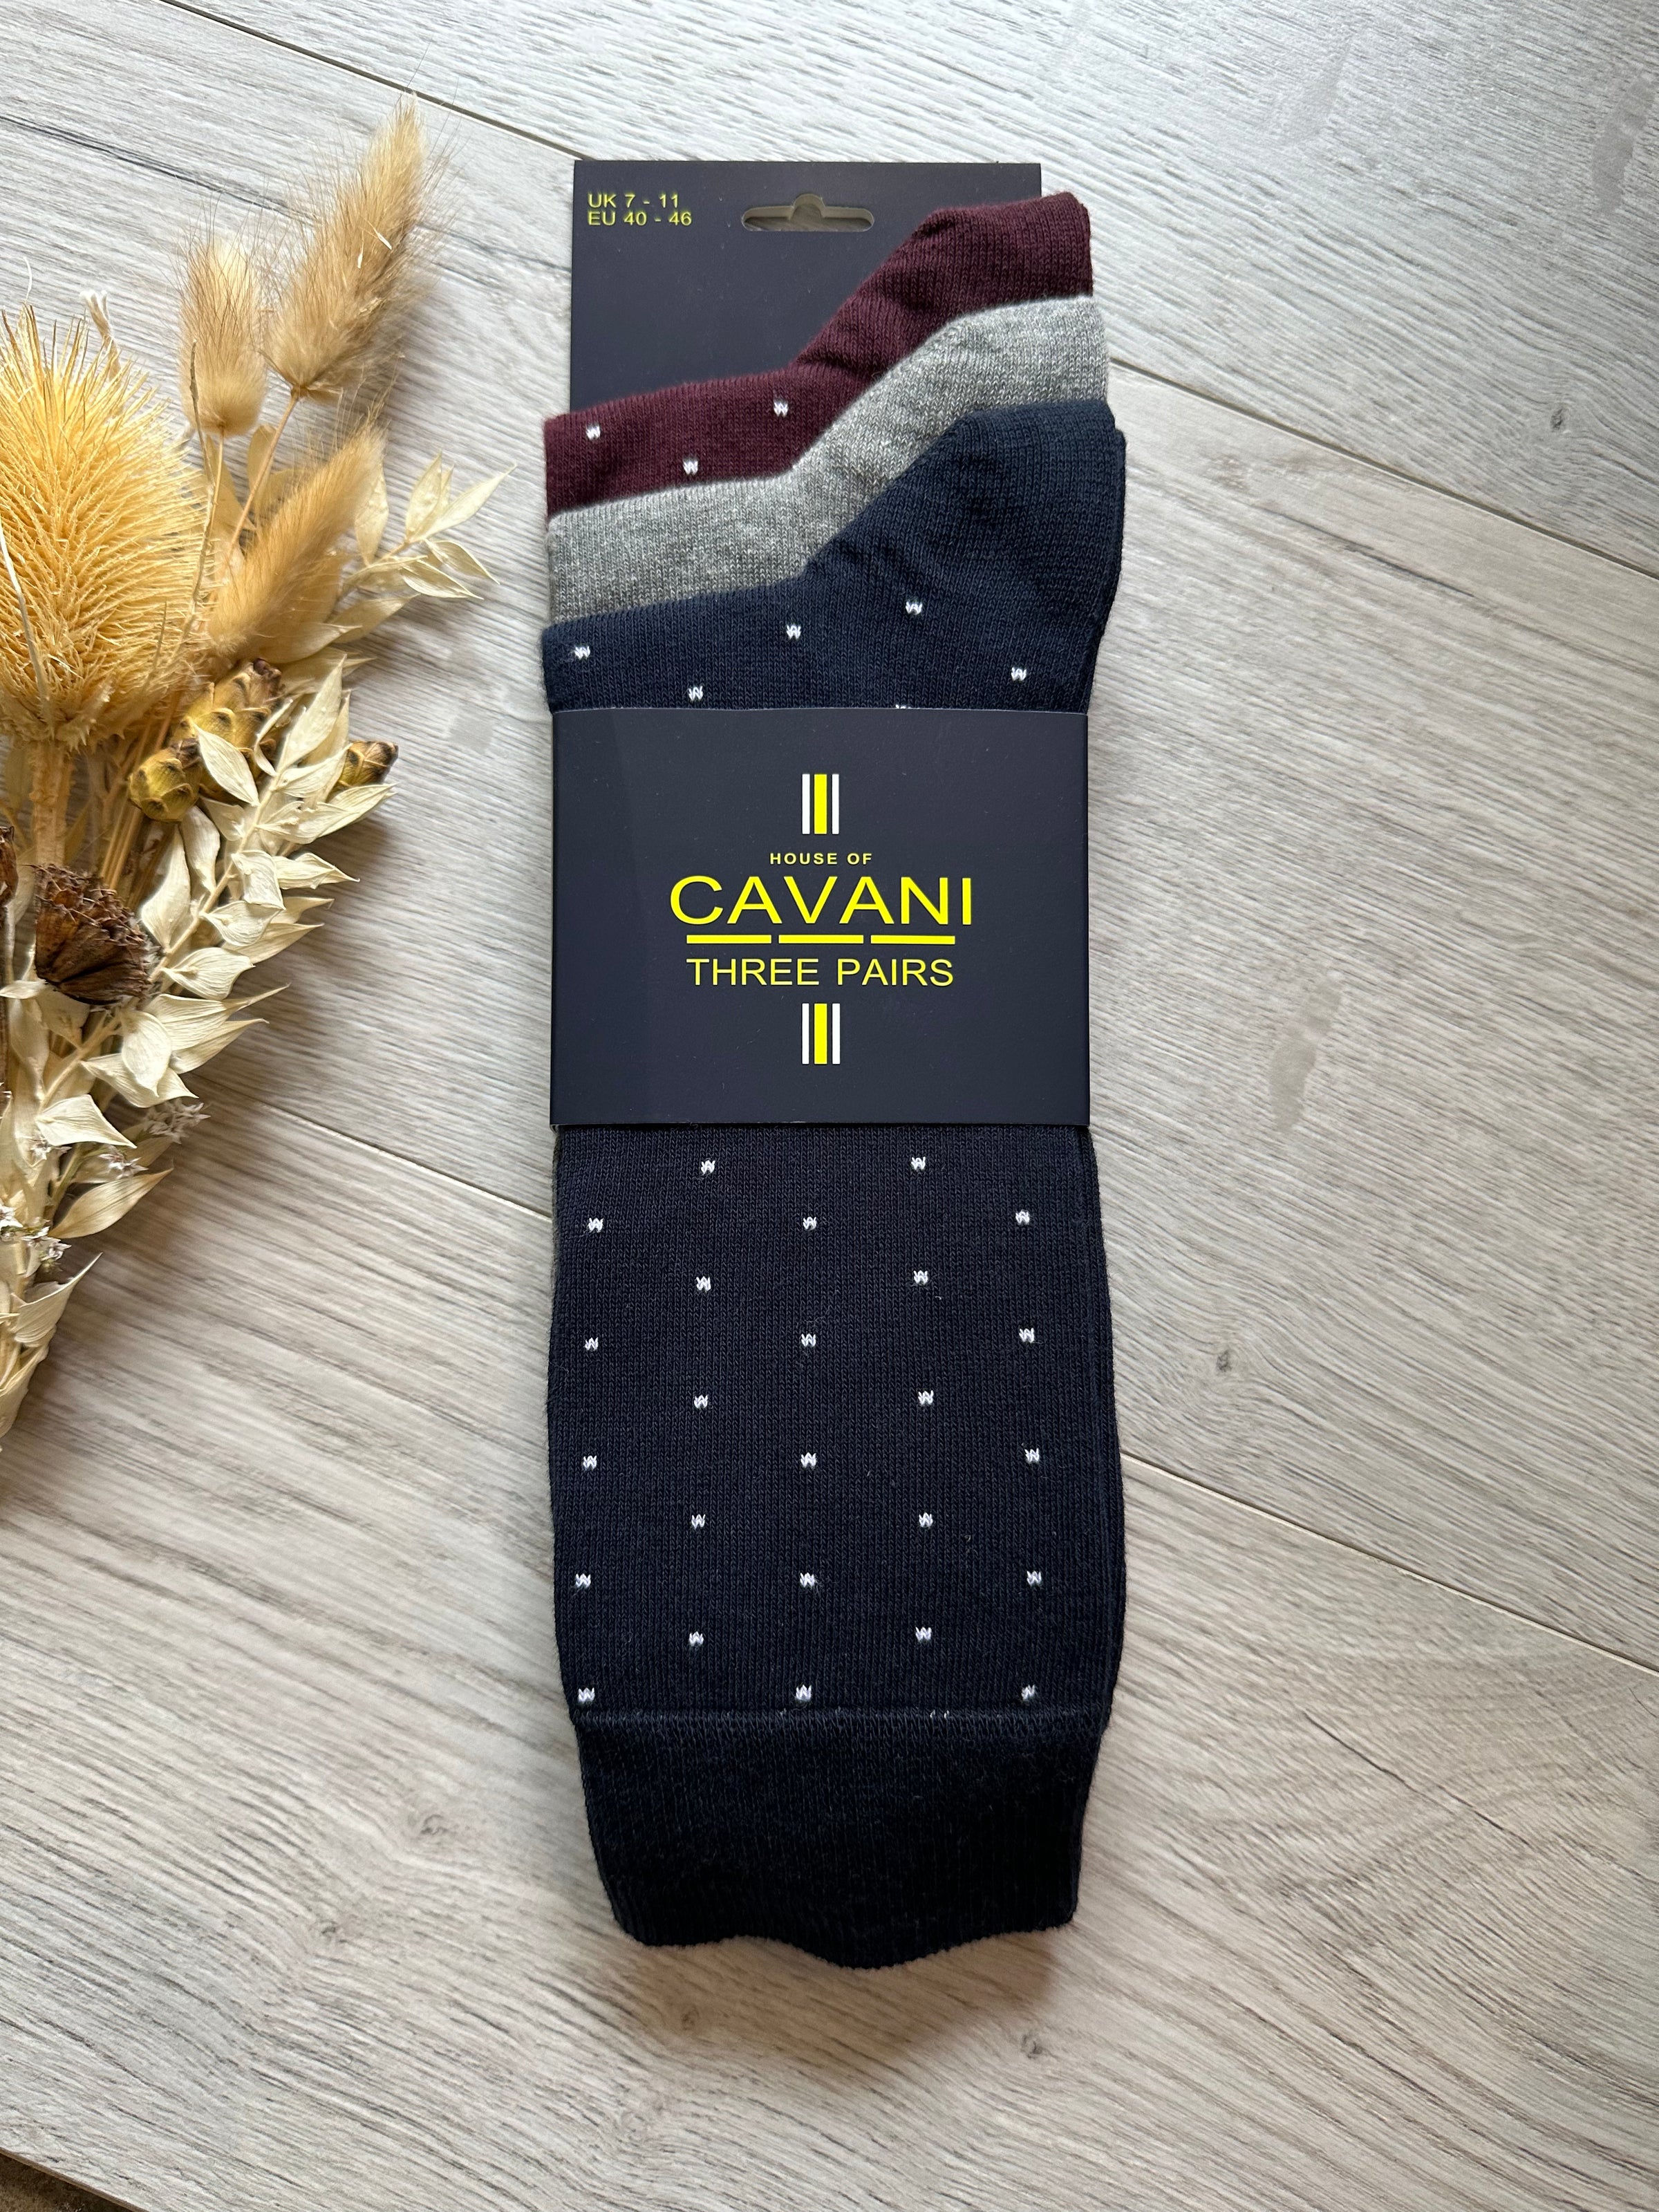 Cavani Socks In Navy/Grey/Burg Mix